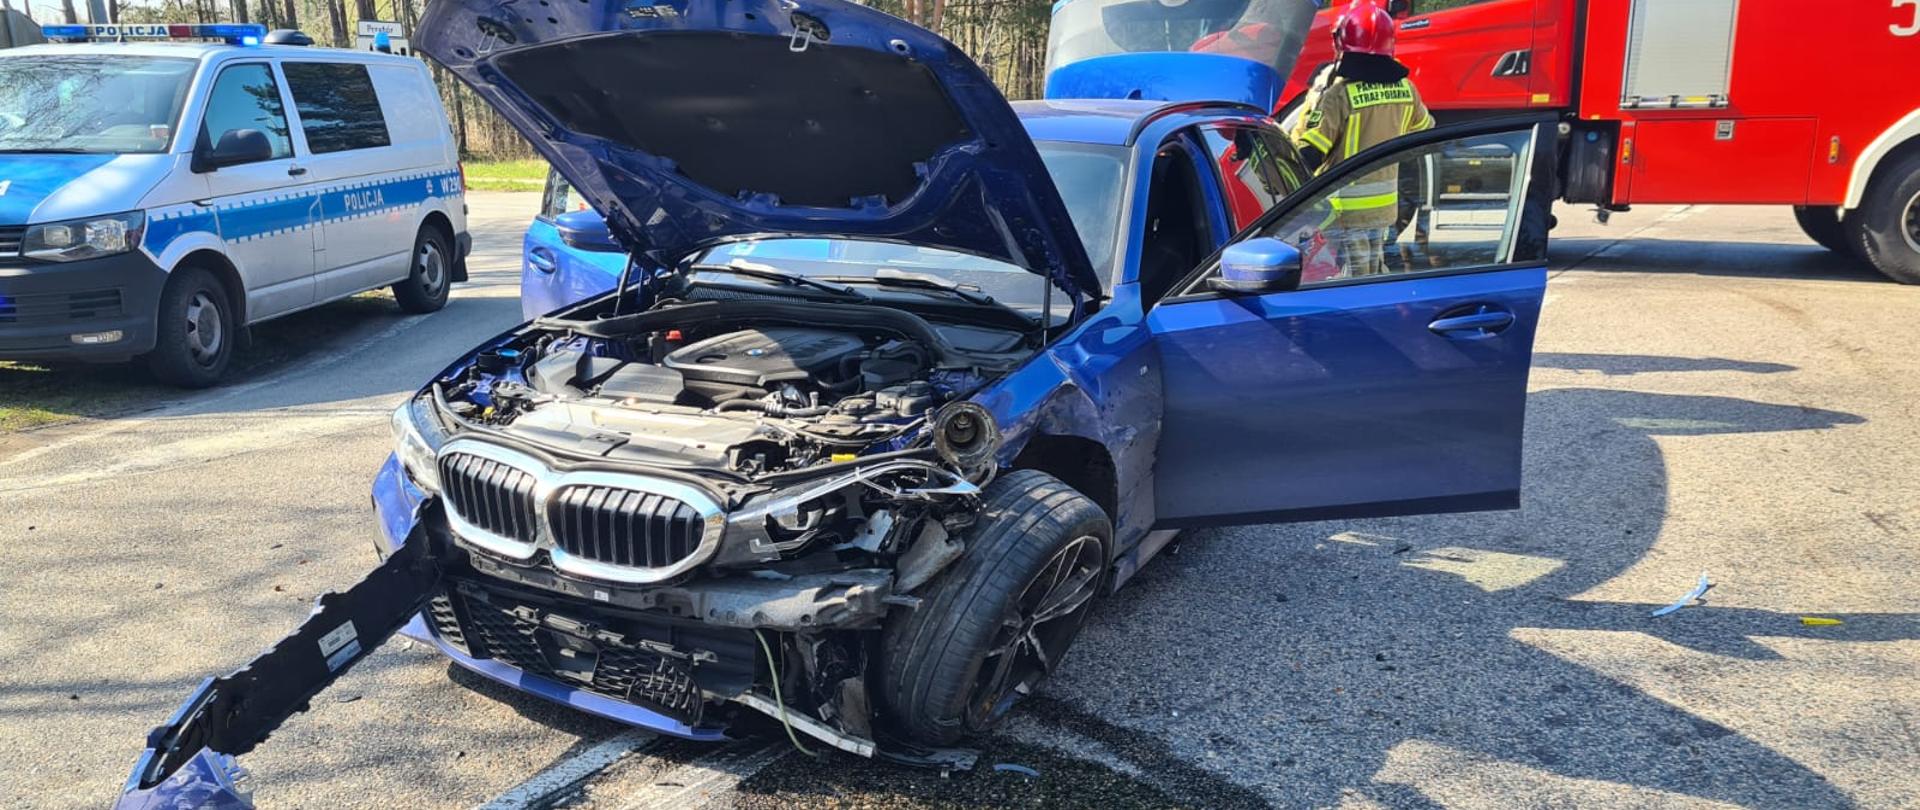 Zdjęcie przedstawia uszkodzony samochód osobowy marki BMW koloru granatowego. samochód stoi na środku drogi z otwartą maską. W tle widać samochód pożarniczy oraz radiowóz Policji.